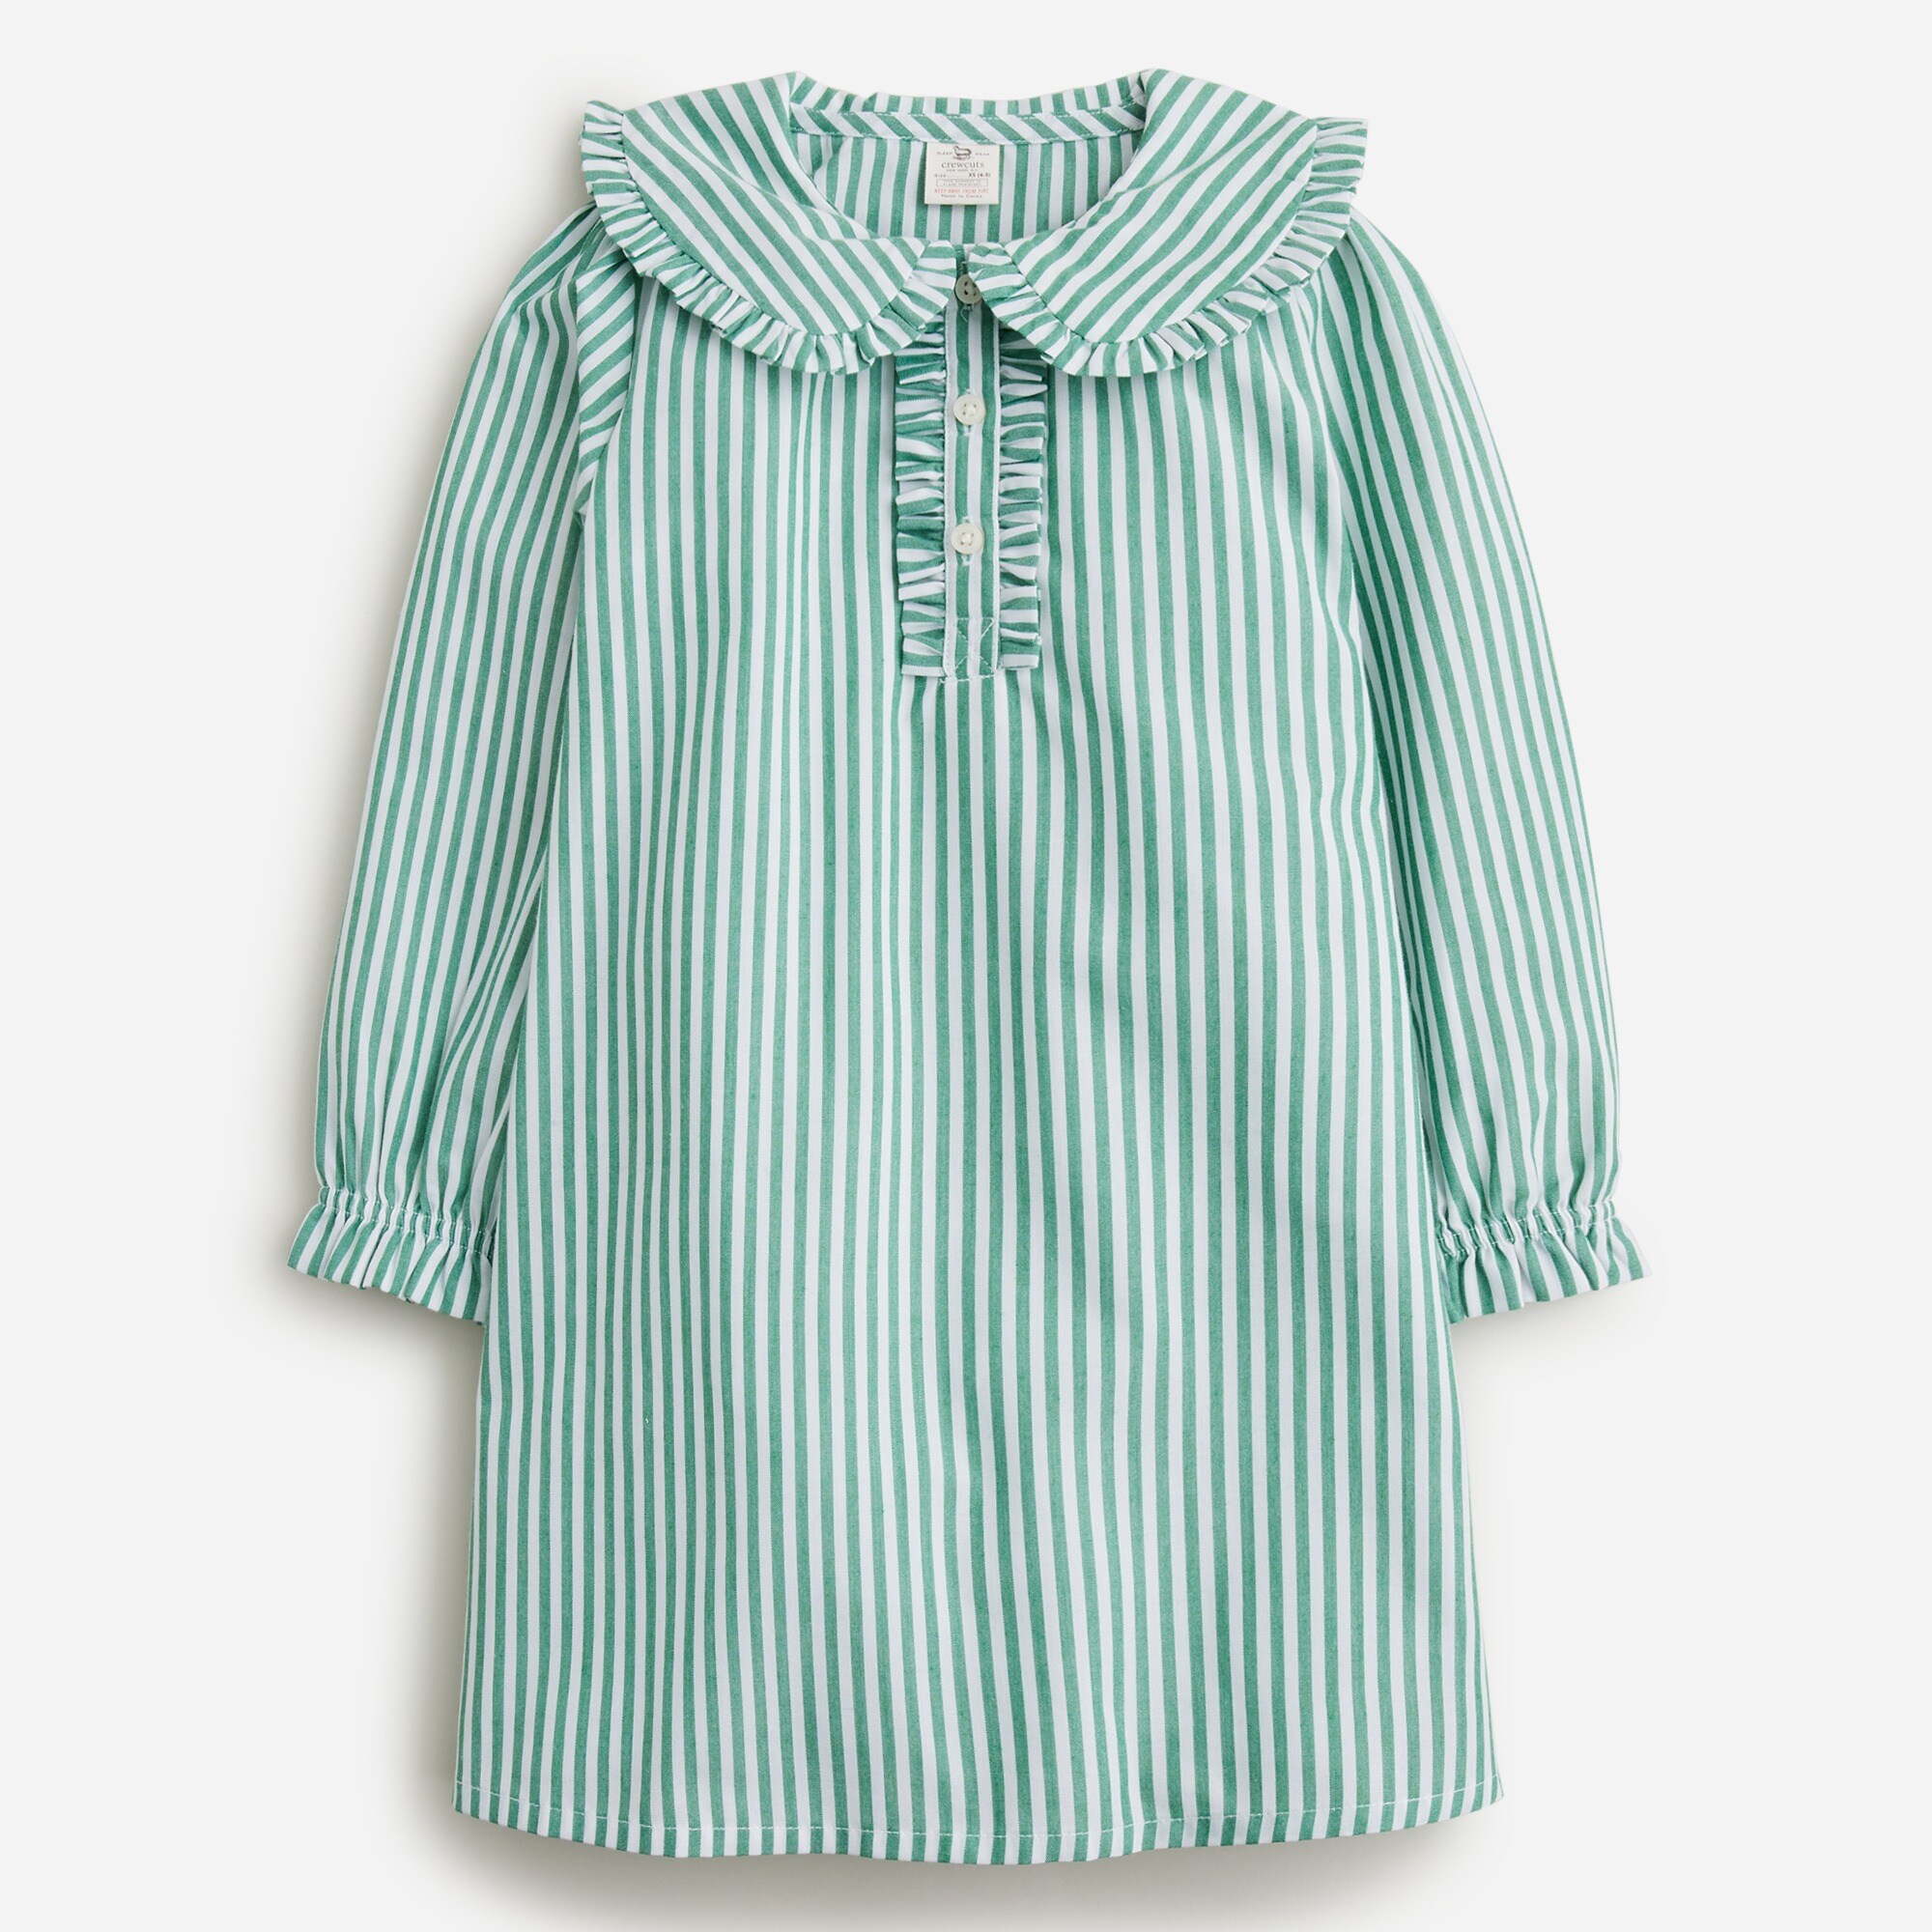  Girls' long-sleeve nightgown in stripe